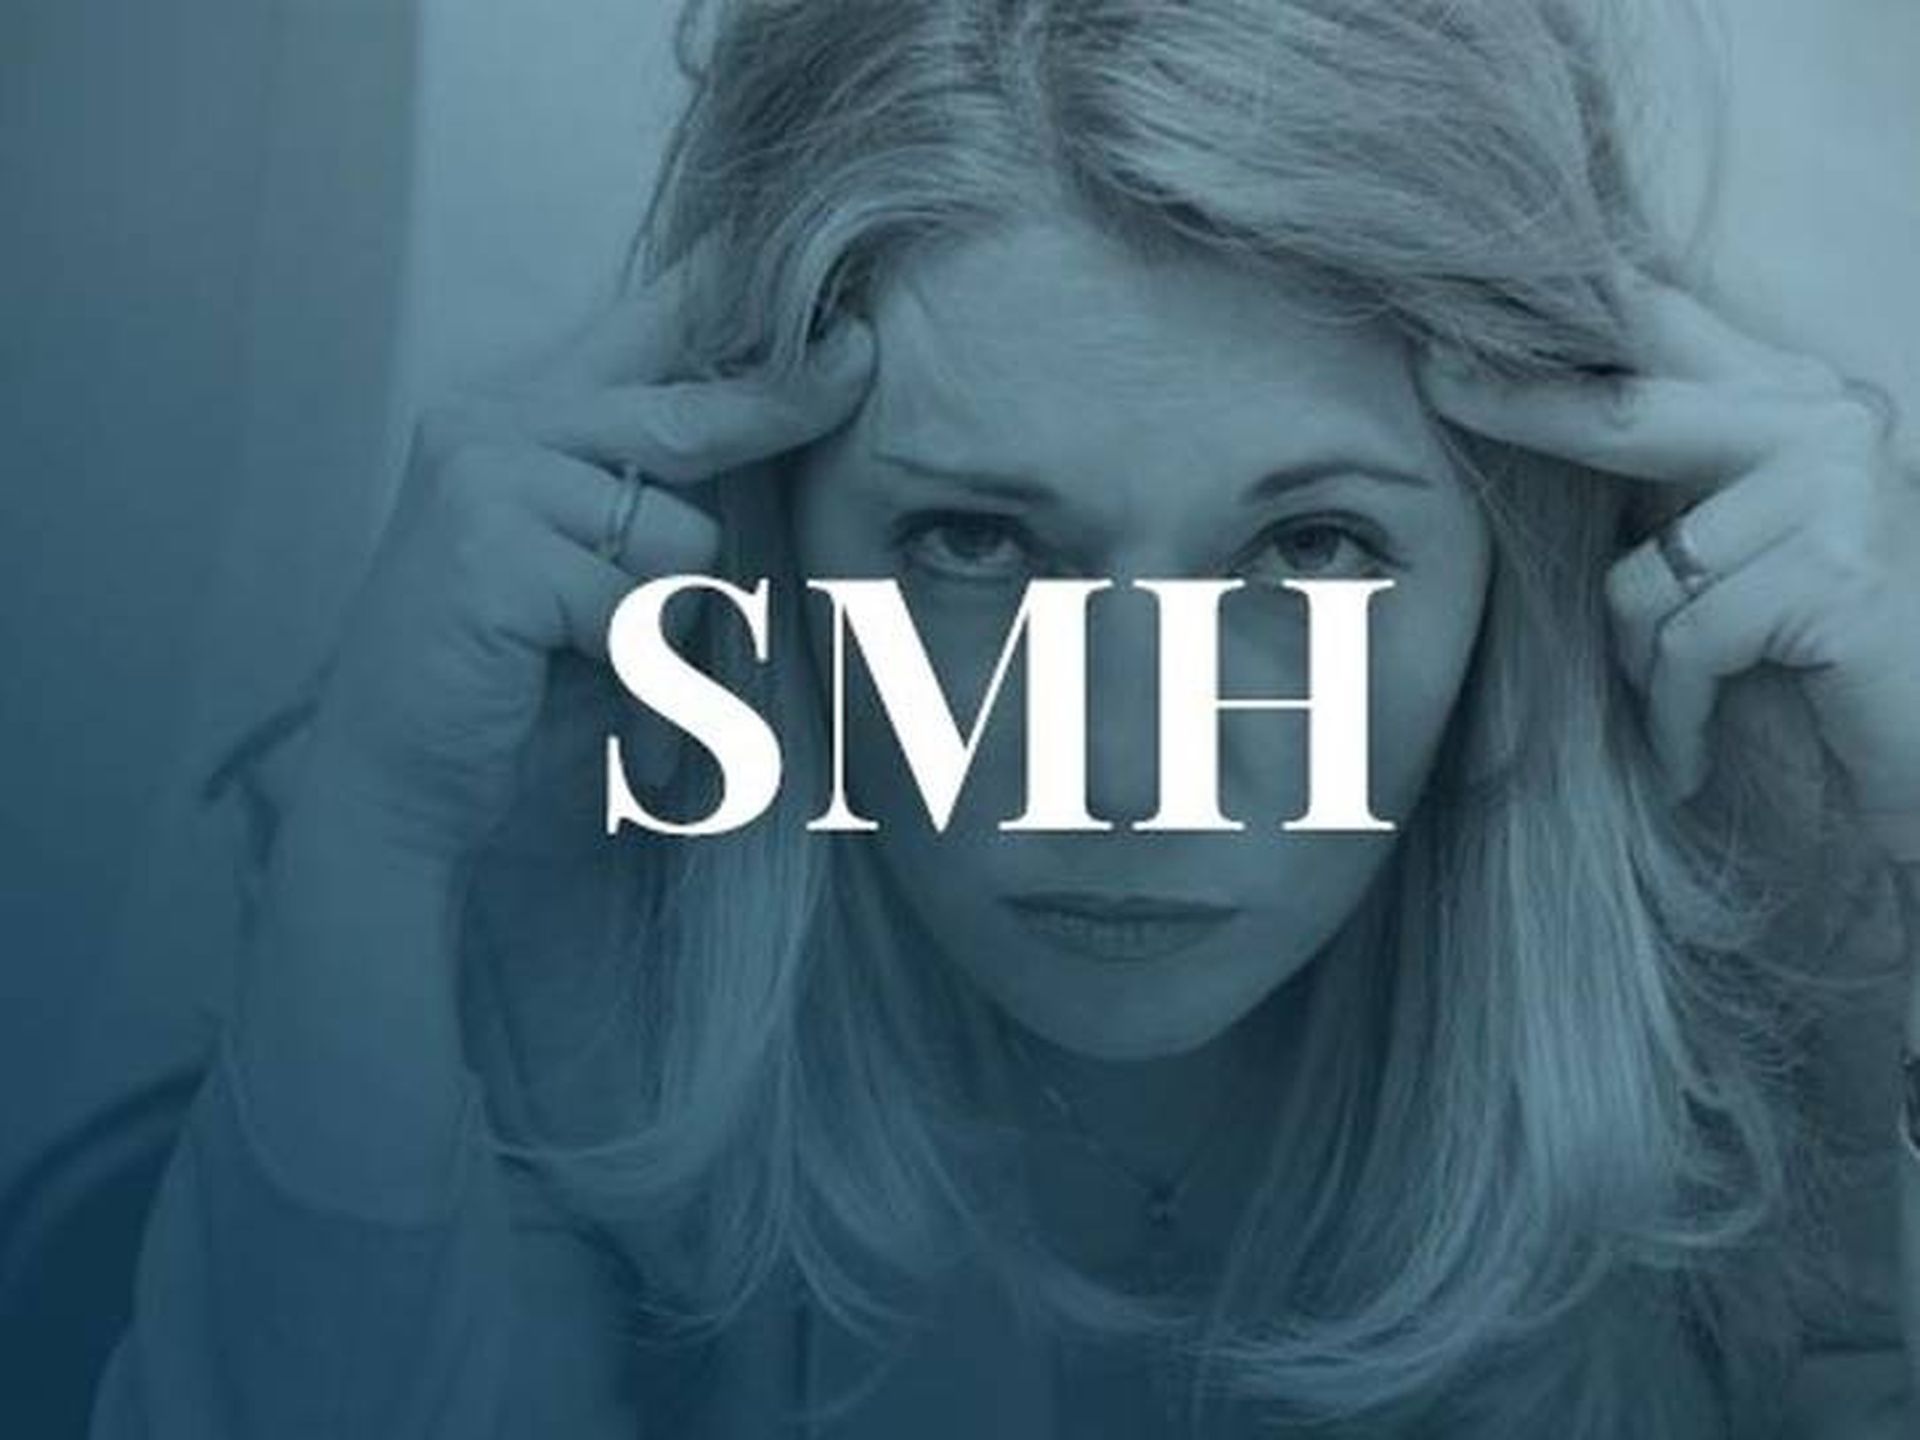 Neste artigo, abordaremos o que significa SMH no TikTok e como usá-lo, para que você possa usá-lo quando necessário.